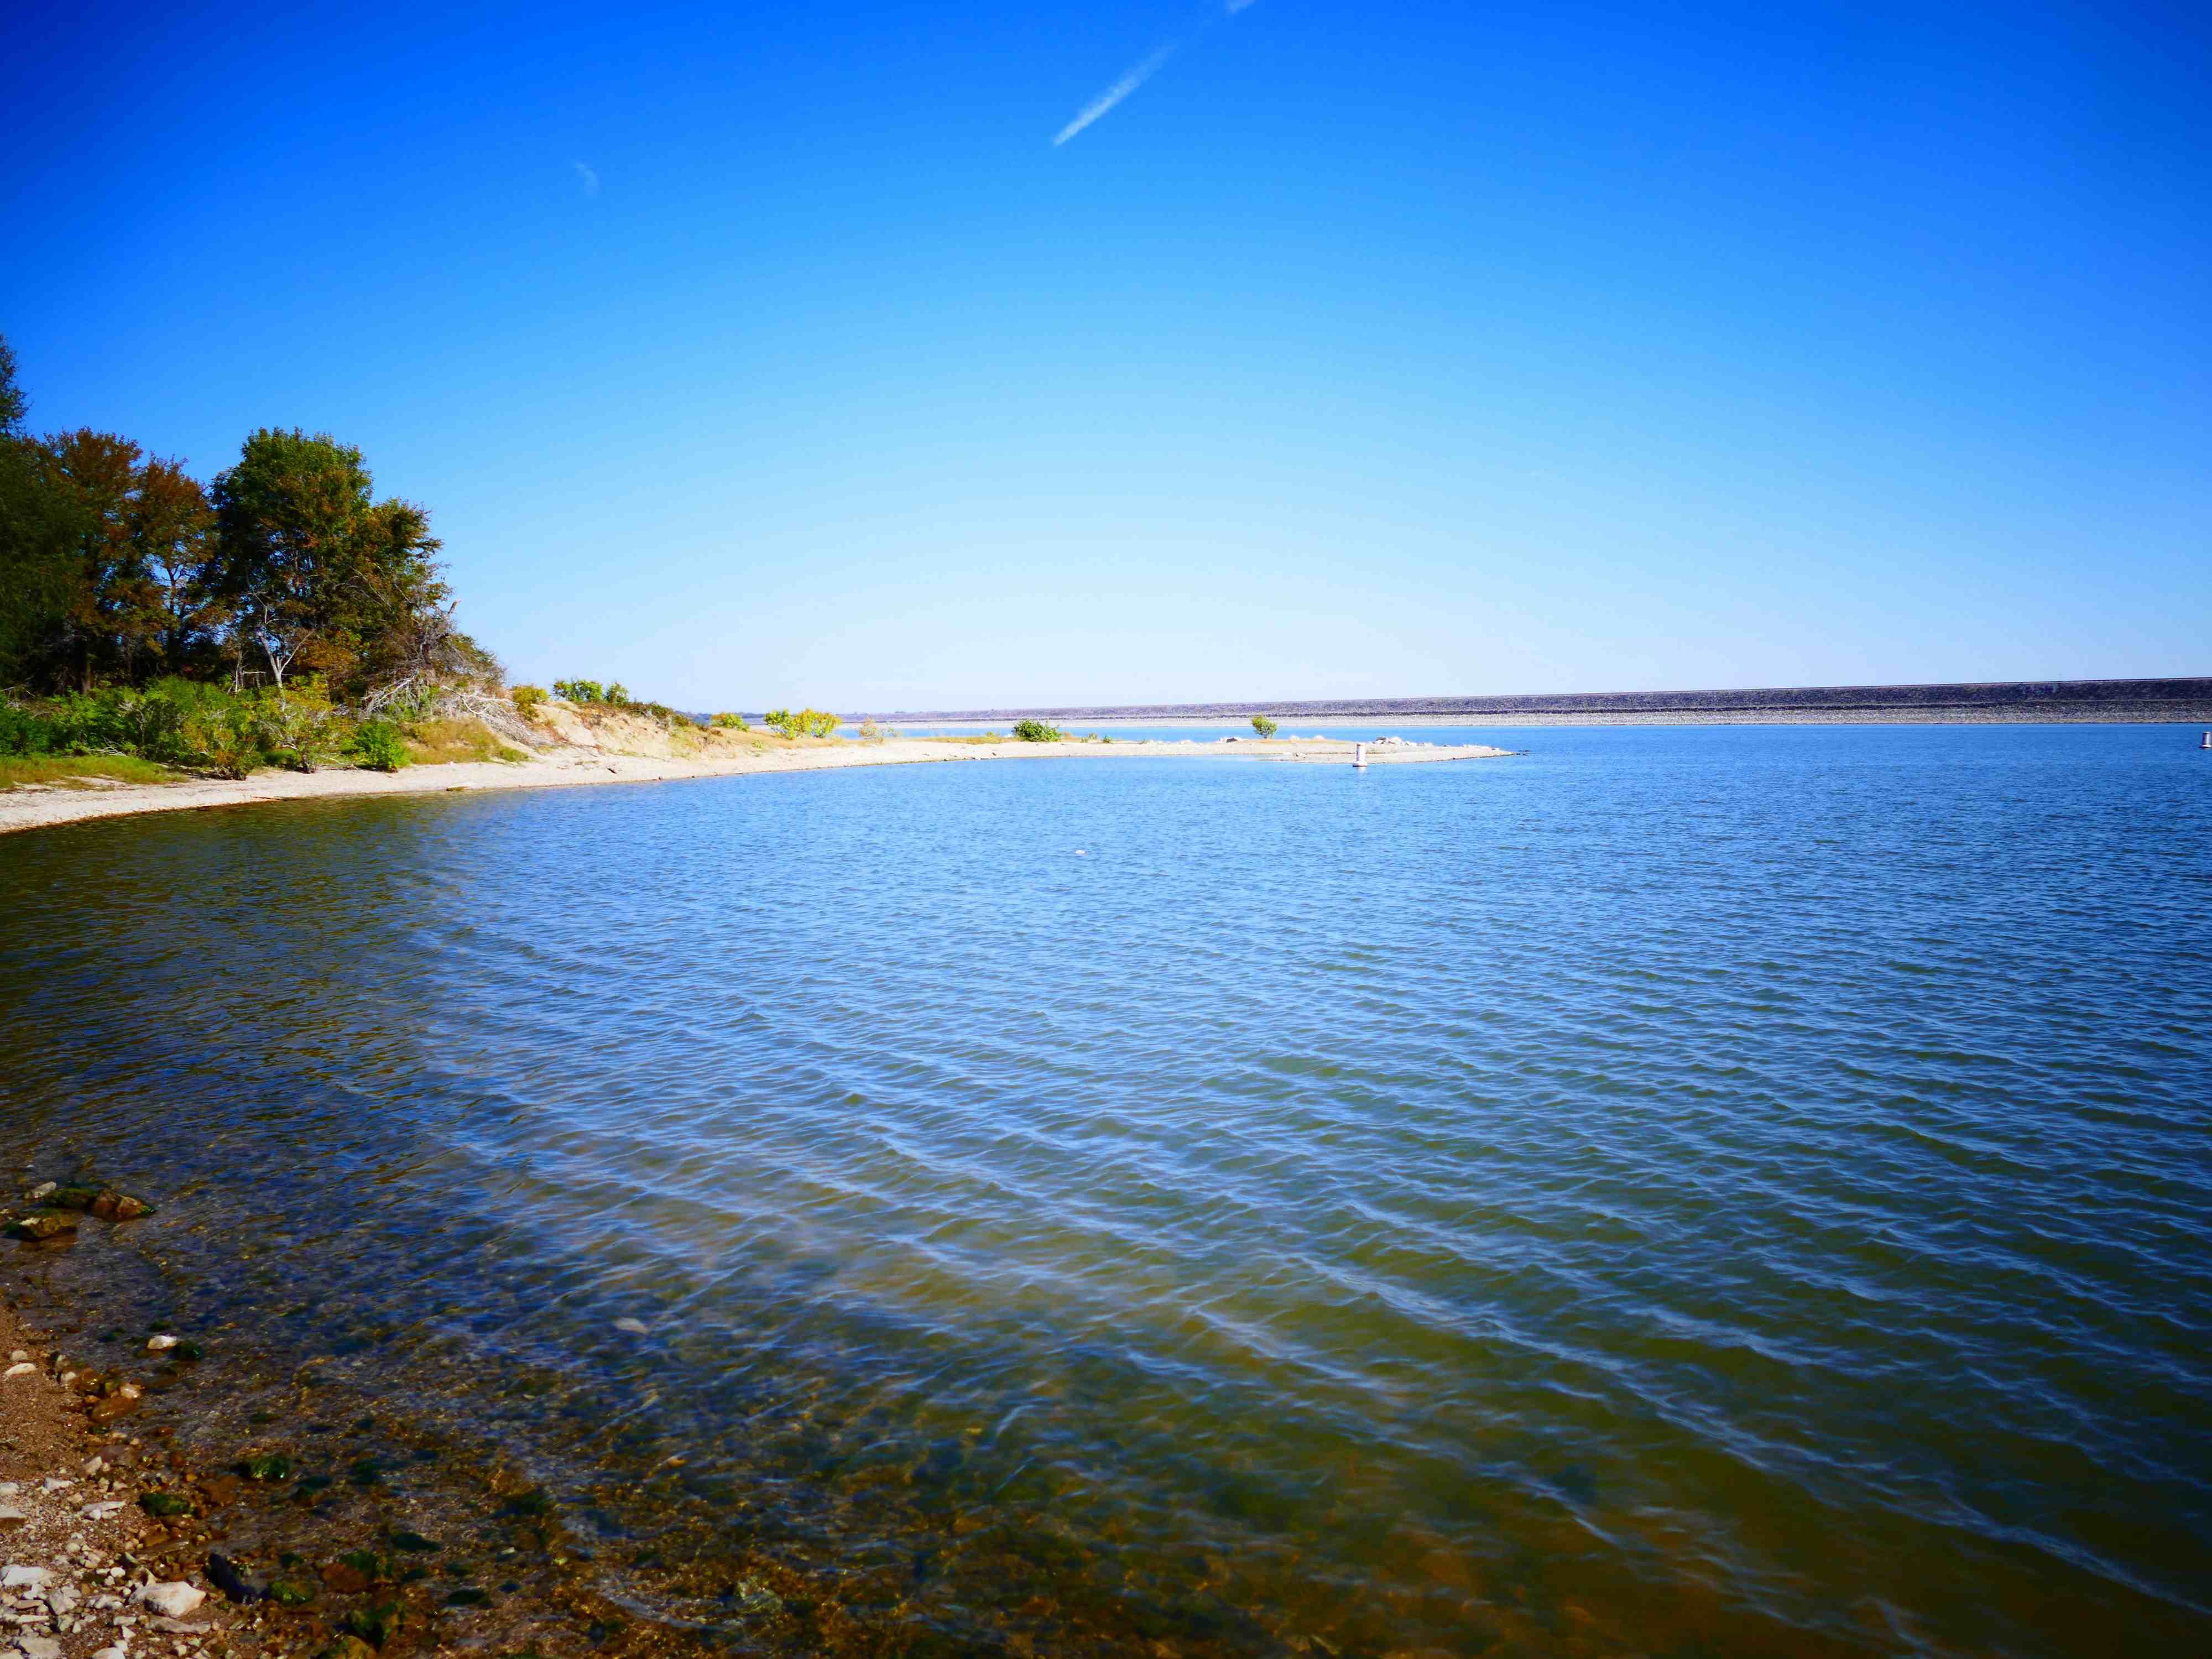 Enjoy natural beauty and outdoor fun at nearby Lake Texoma